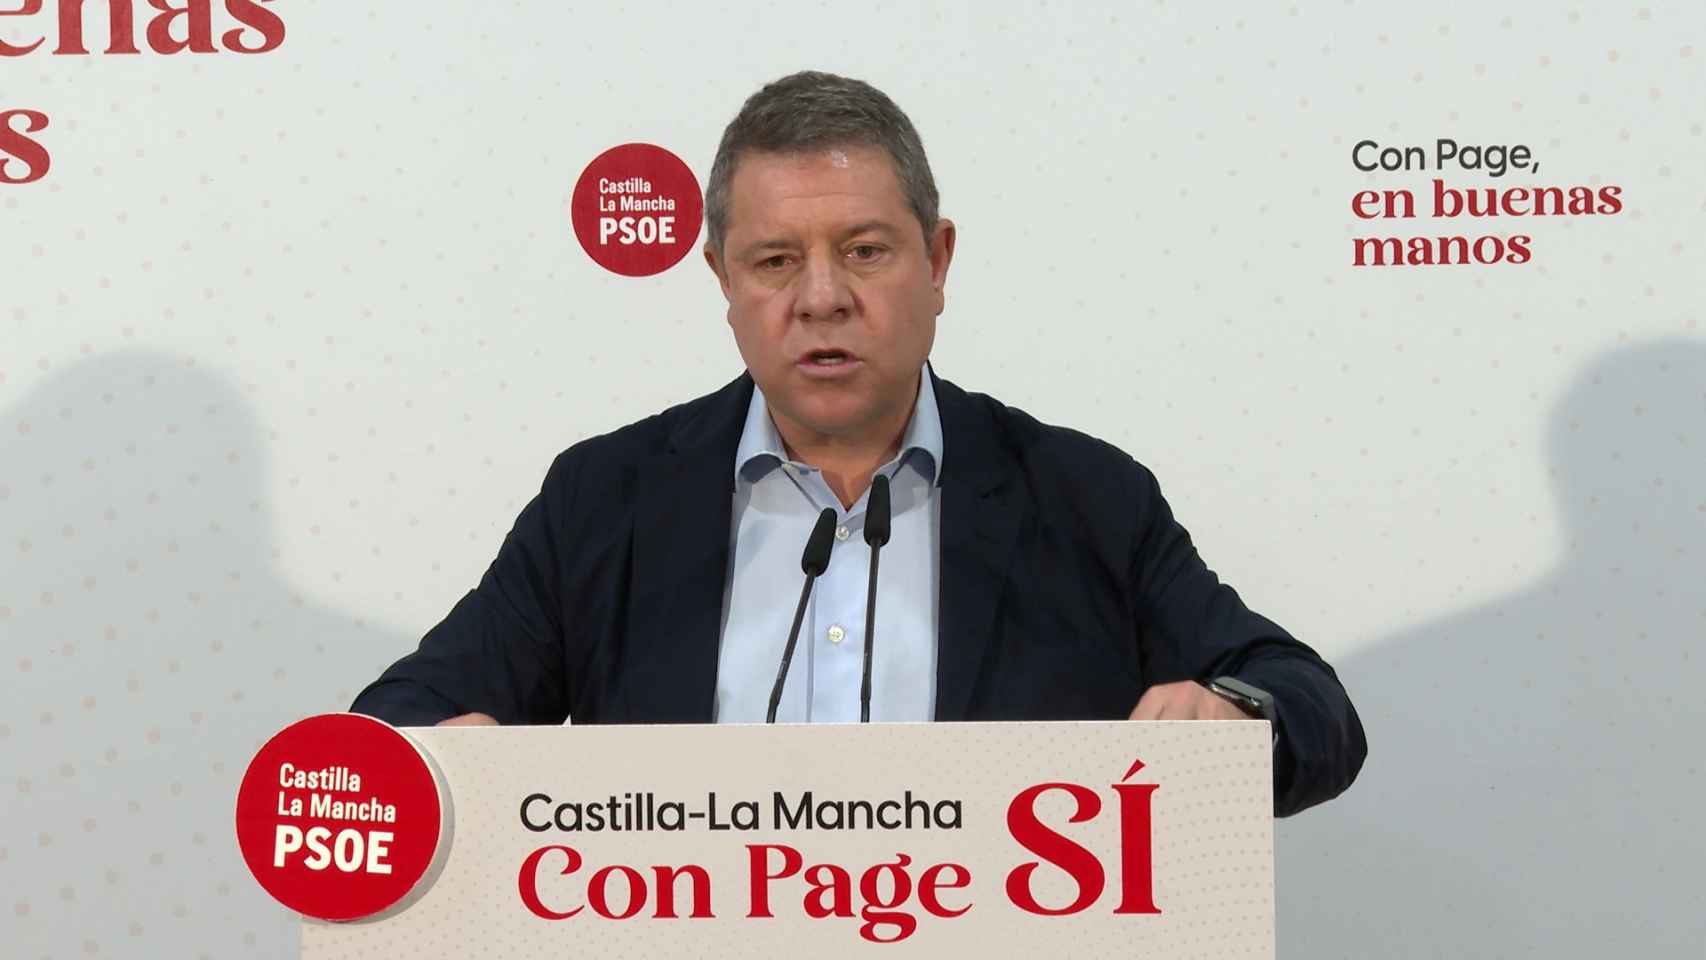 Page pide a los dirigentes de Vox en Castilla-La Mancha que vayan de cara si apoyan el trasvase